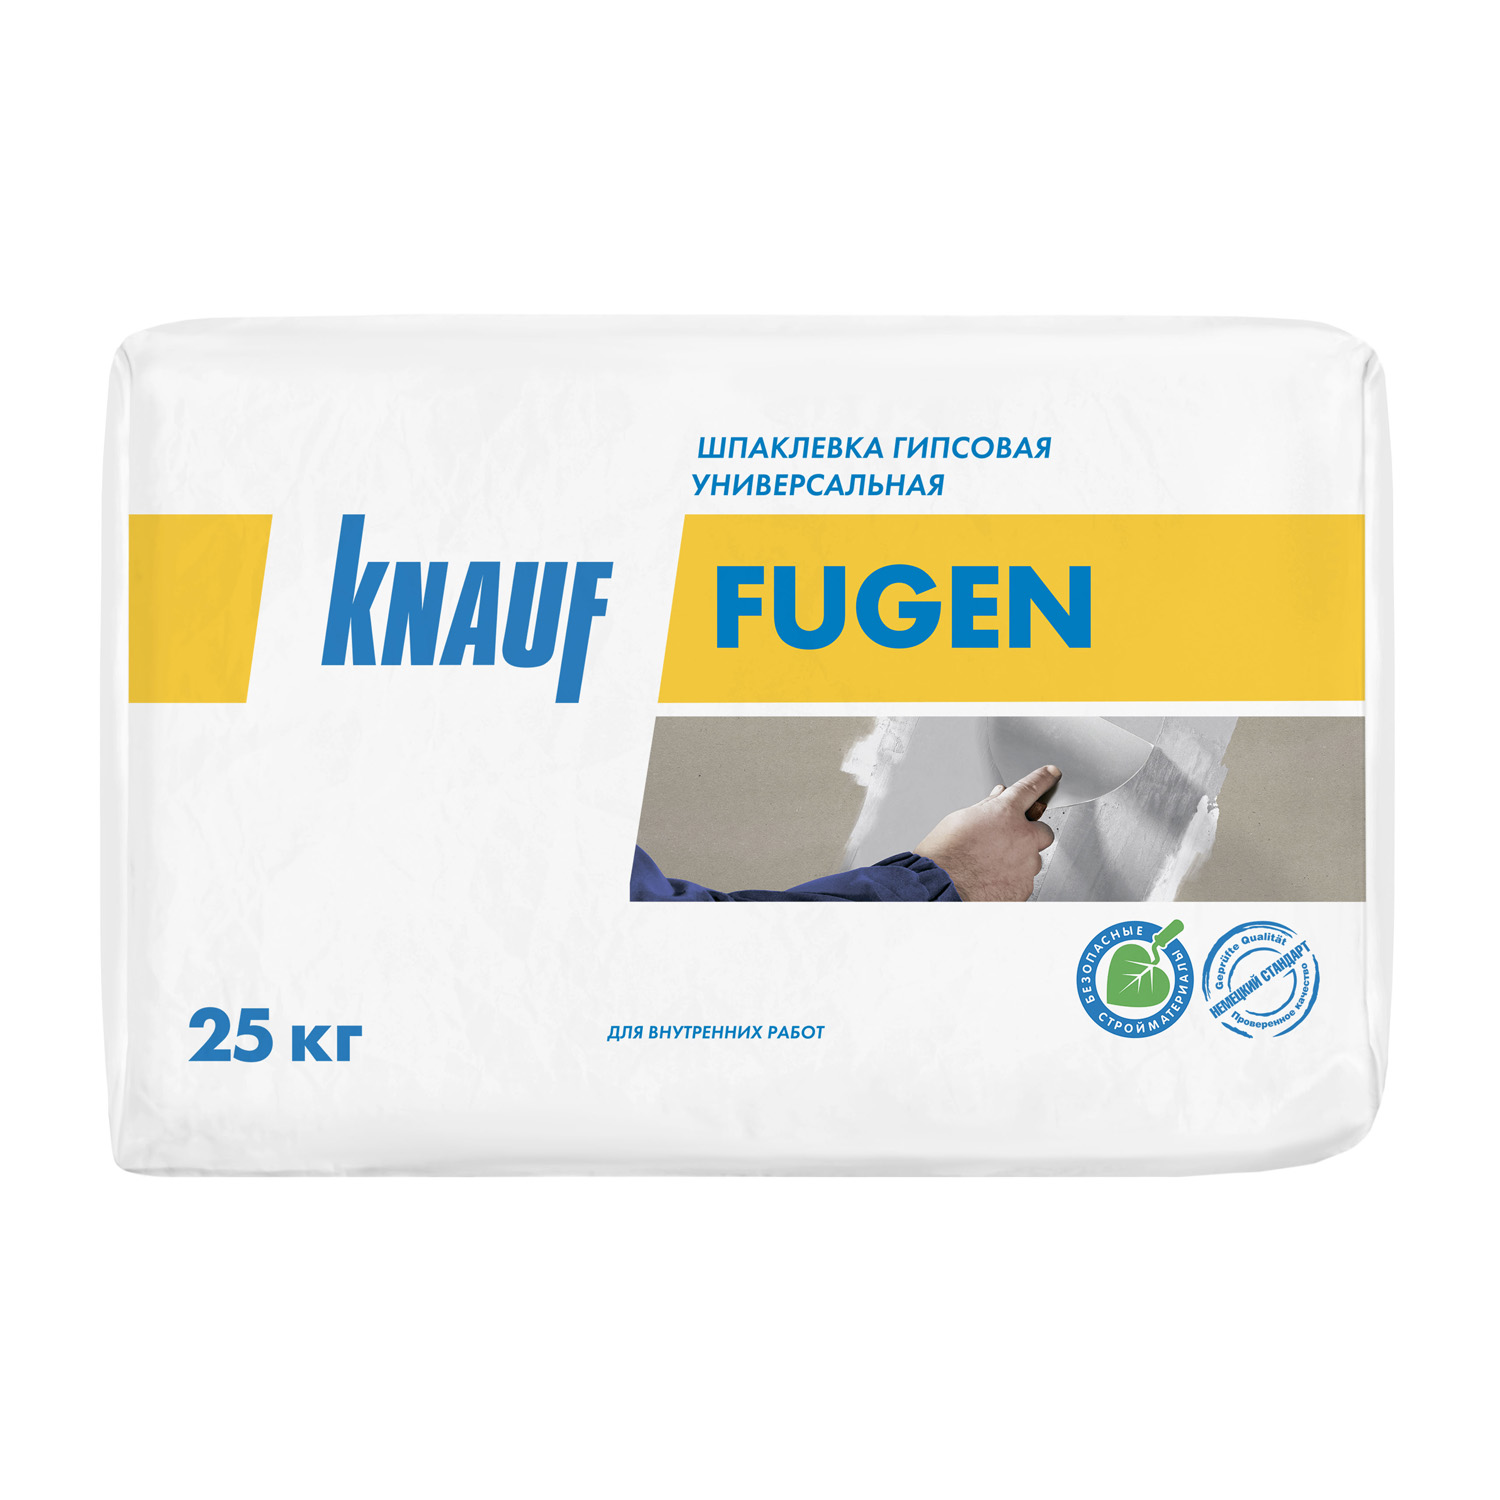 Шпаклевка гипсовая Кнауф Фуген 25 кг цена